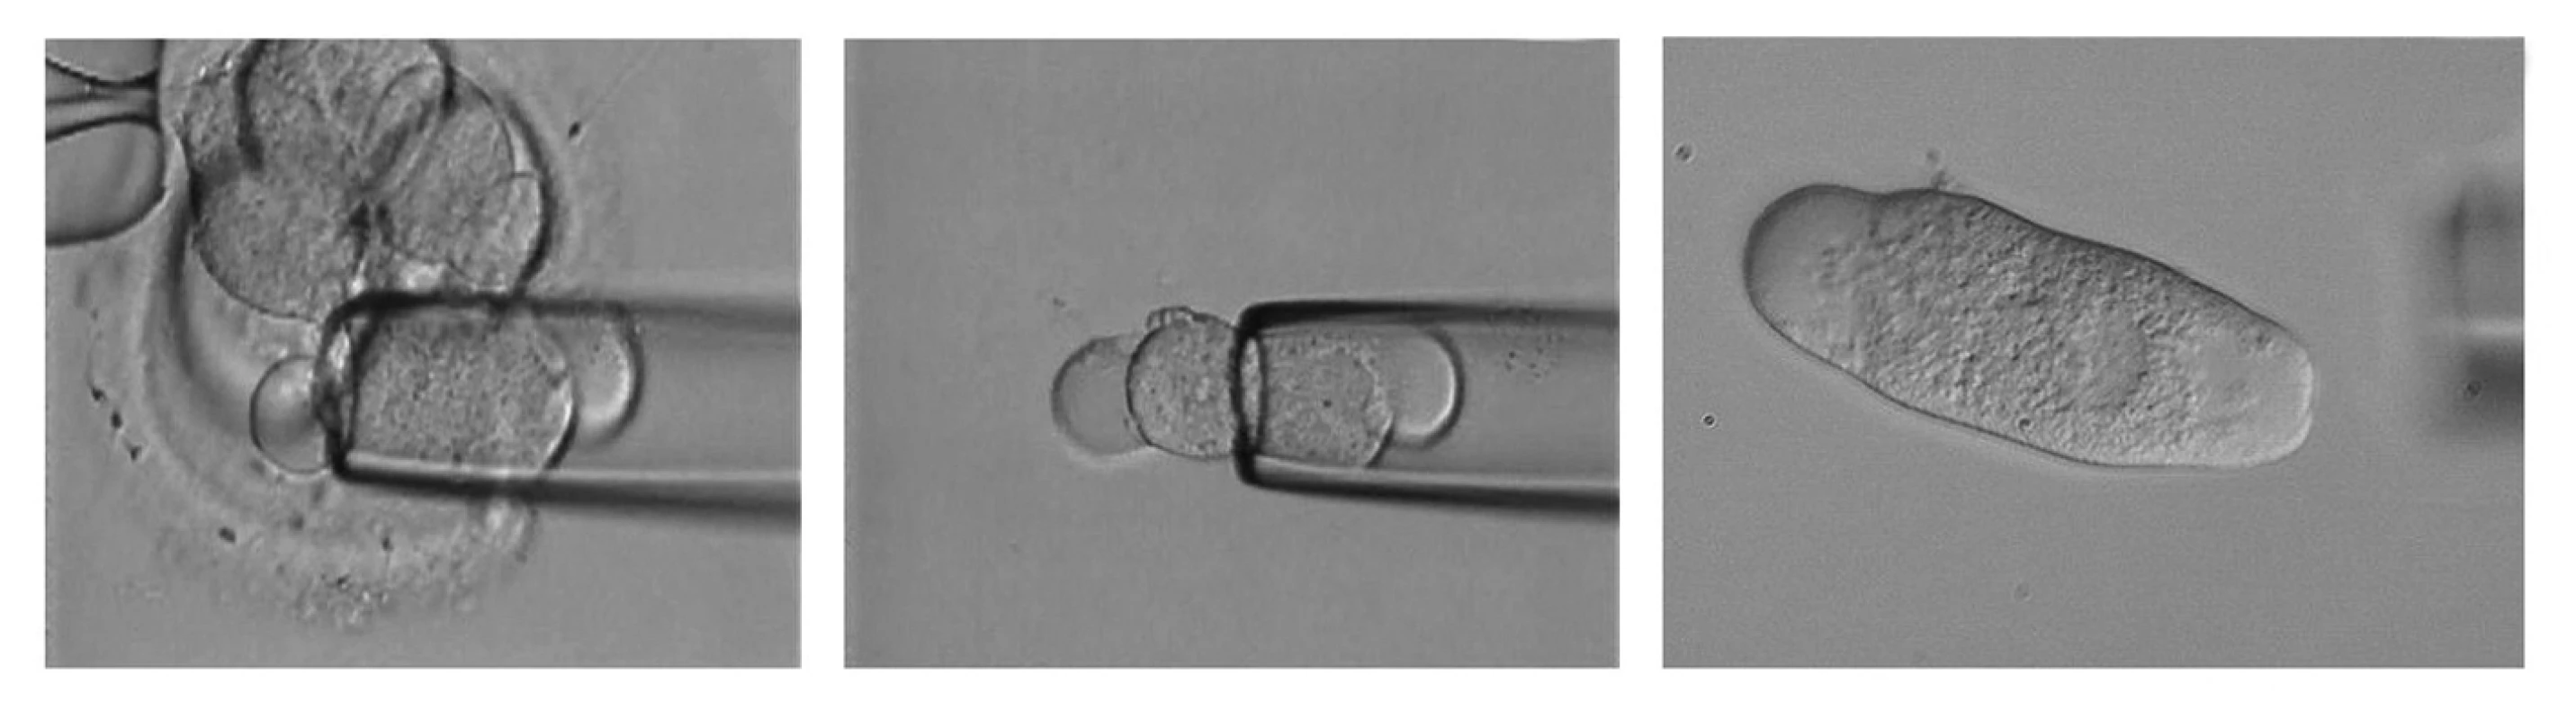 &lt;i&gt;Odběr blastomey z časného embrya.&lt;/i&gt; A – nasávání 1 blastomey uvnitř embrya do bioptické pipety, B – uvolnění blastomey z bioptické pipety do média, C – odebraná blastomea určená pro PCR PGD s patrným buněčným jádrem.